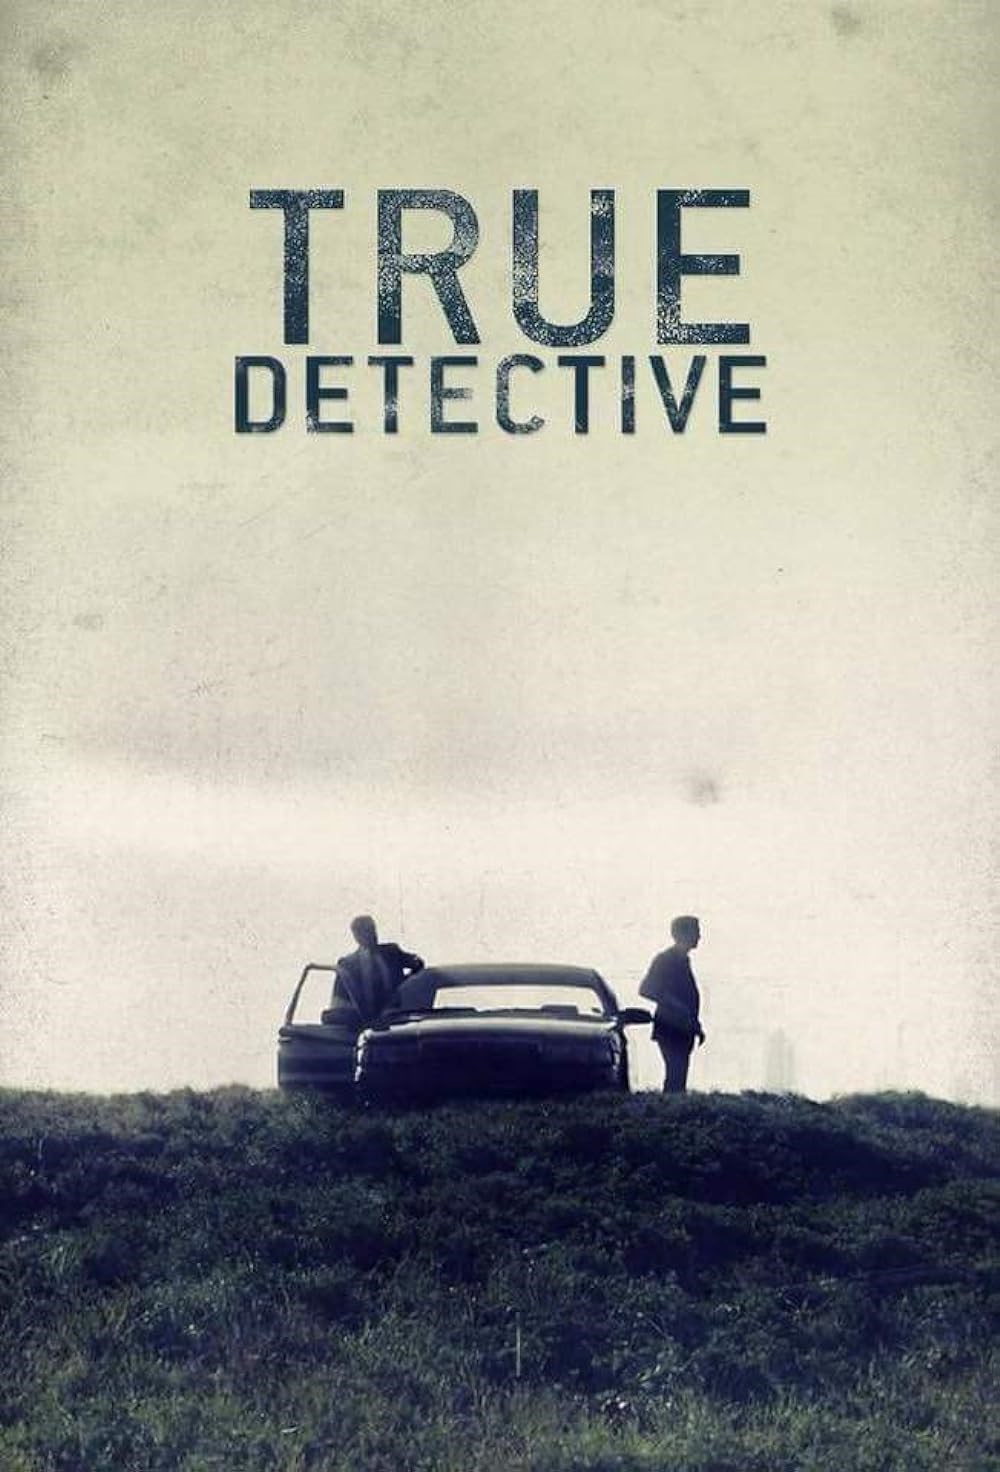 dedektif dizisi True Detective